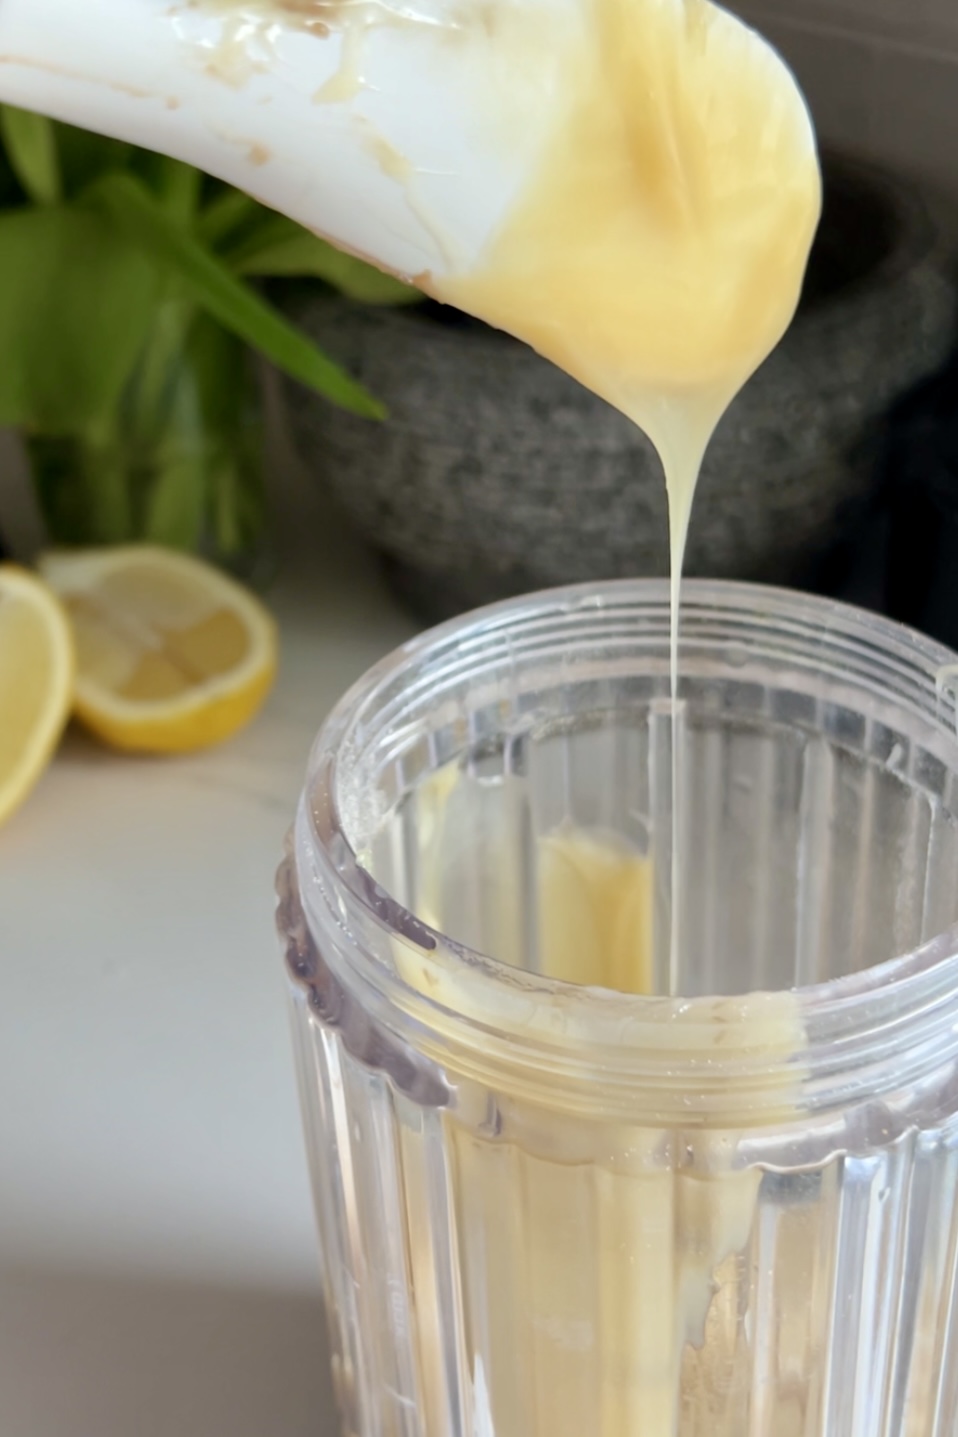 Leche condensada vertida de una cuchara blanca a un vaso transparente, con un limón partido por la mitad y un mortero de piedra al fondo, en la encimera de una cocina, para la receta de Paletas de Tarta de Limón.